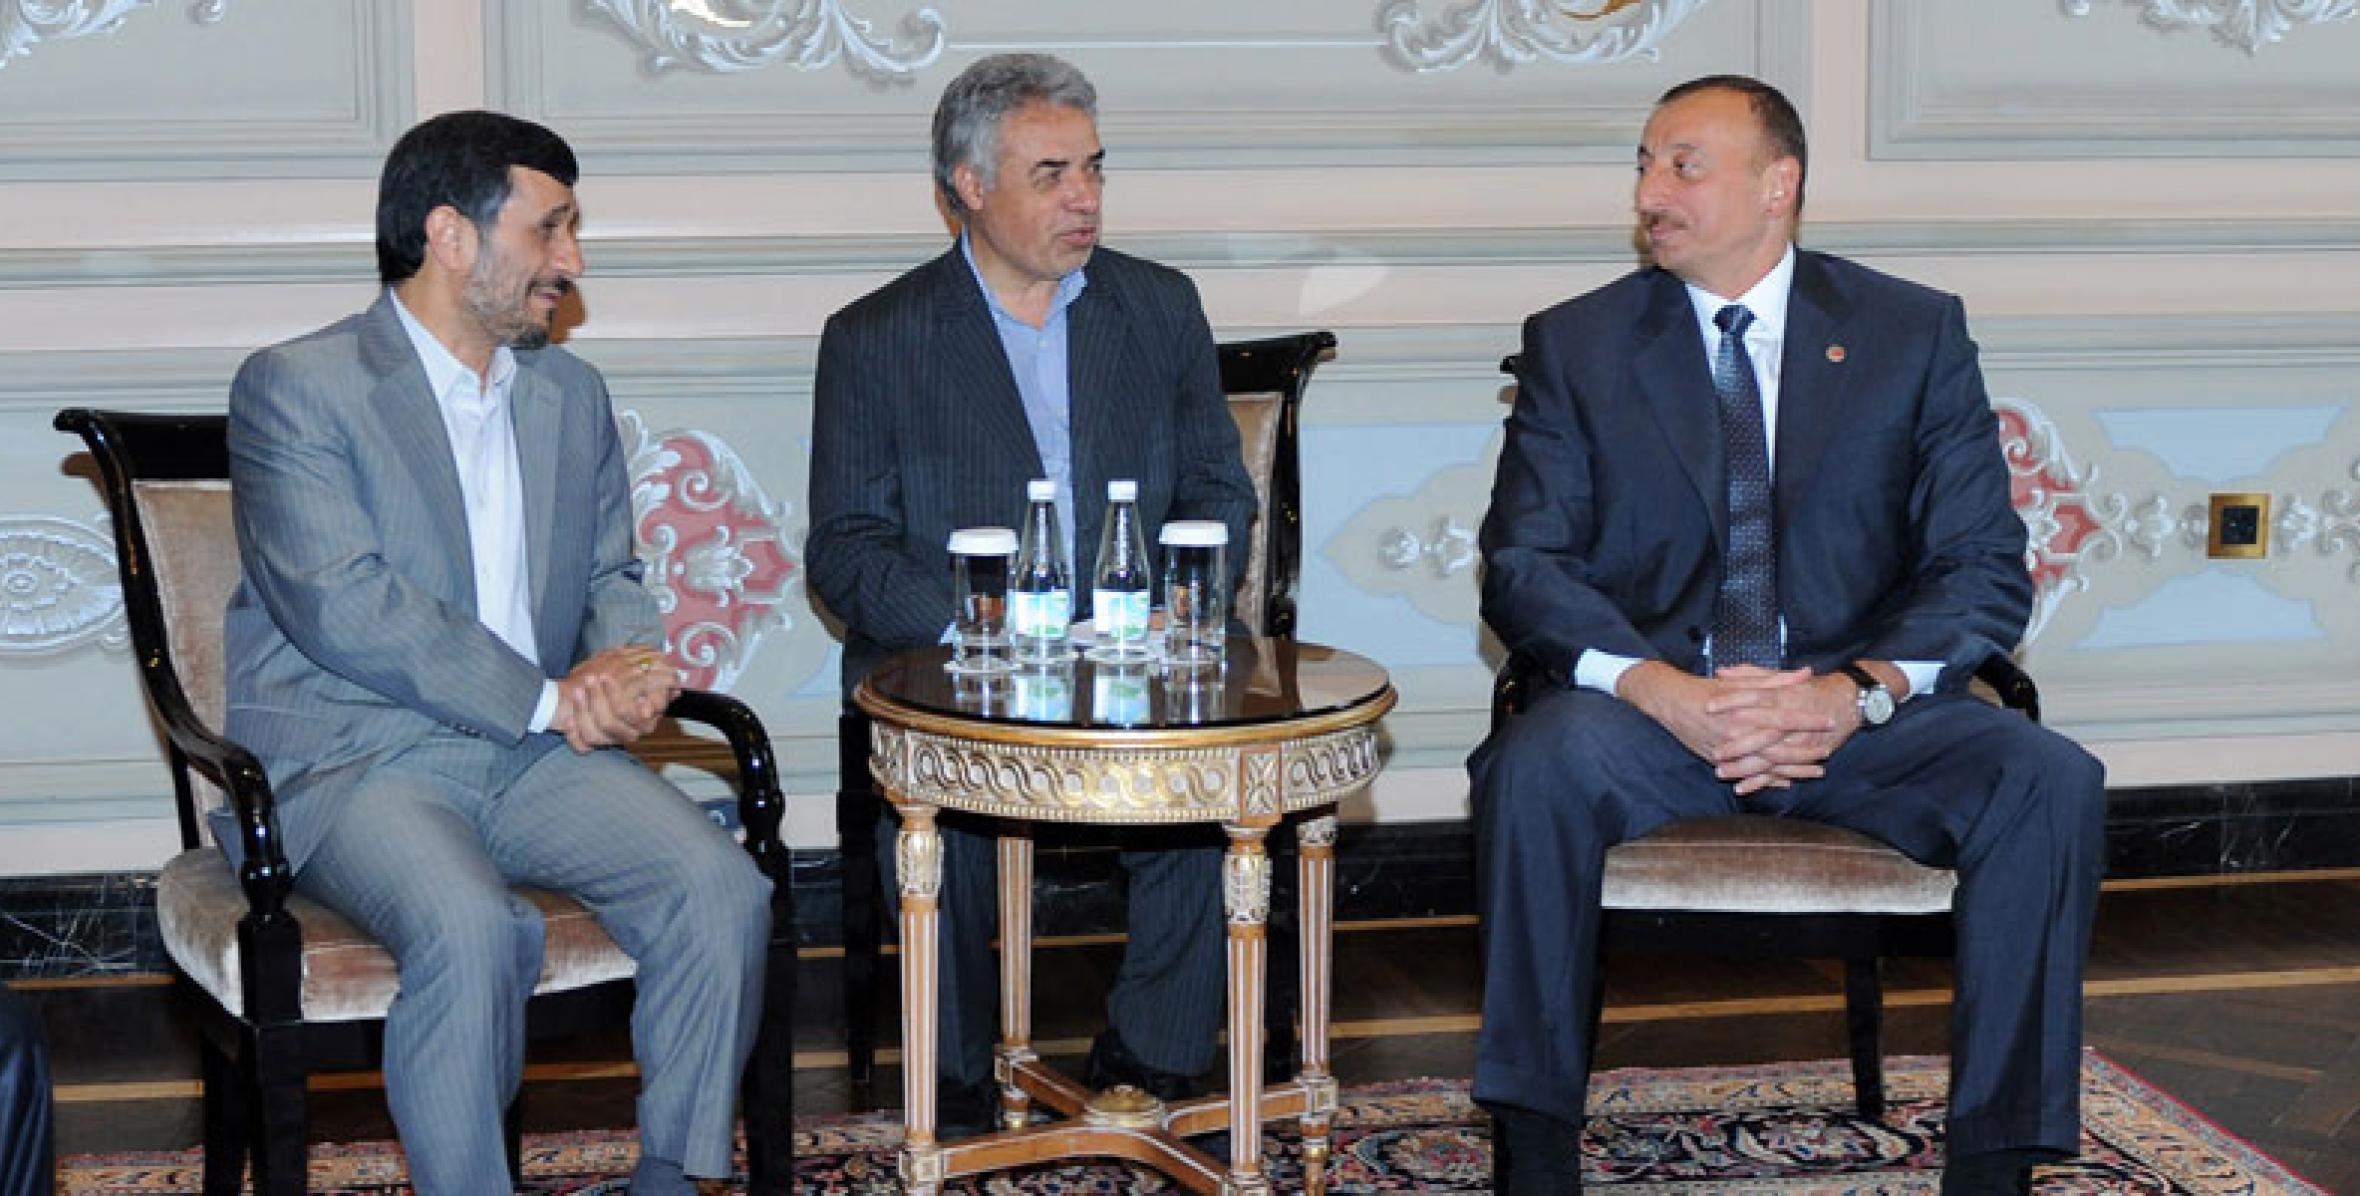 President Ilham Aliyev met with Iranian President Mahmoud Ahmadinejad